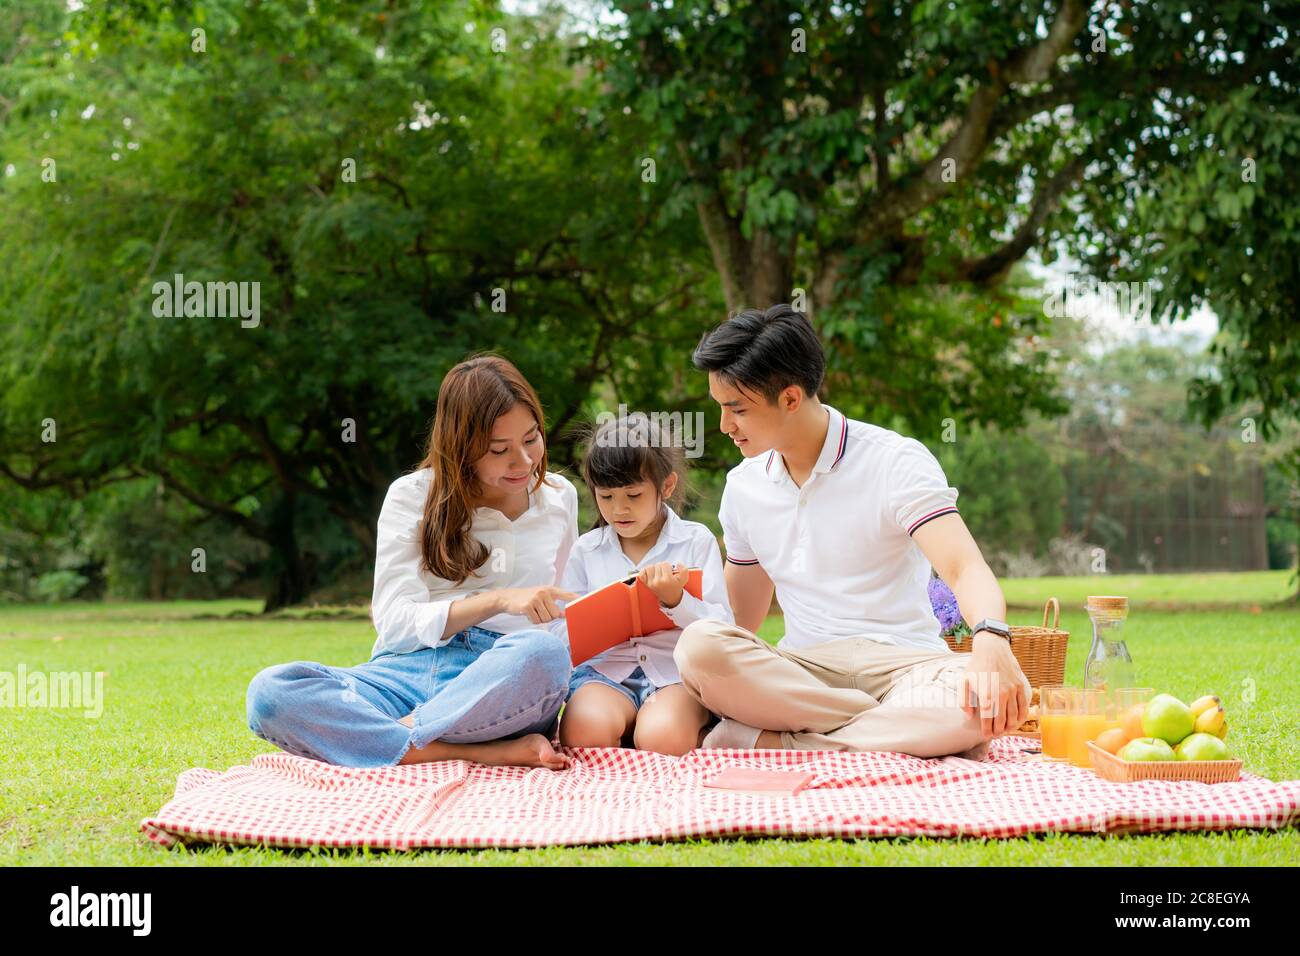 Asiatische Teenager Familie glücklich Urlaub Picknick Moment im Park mit Vater, Mutter und Tochter Buch lesen zusammen im grünen Garten mit Obst und Essen. Stockfoto